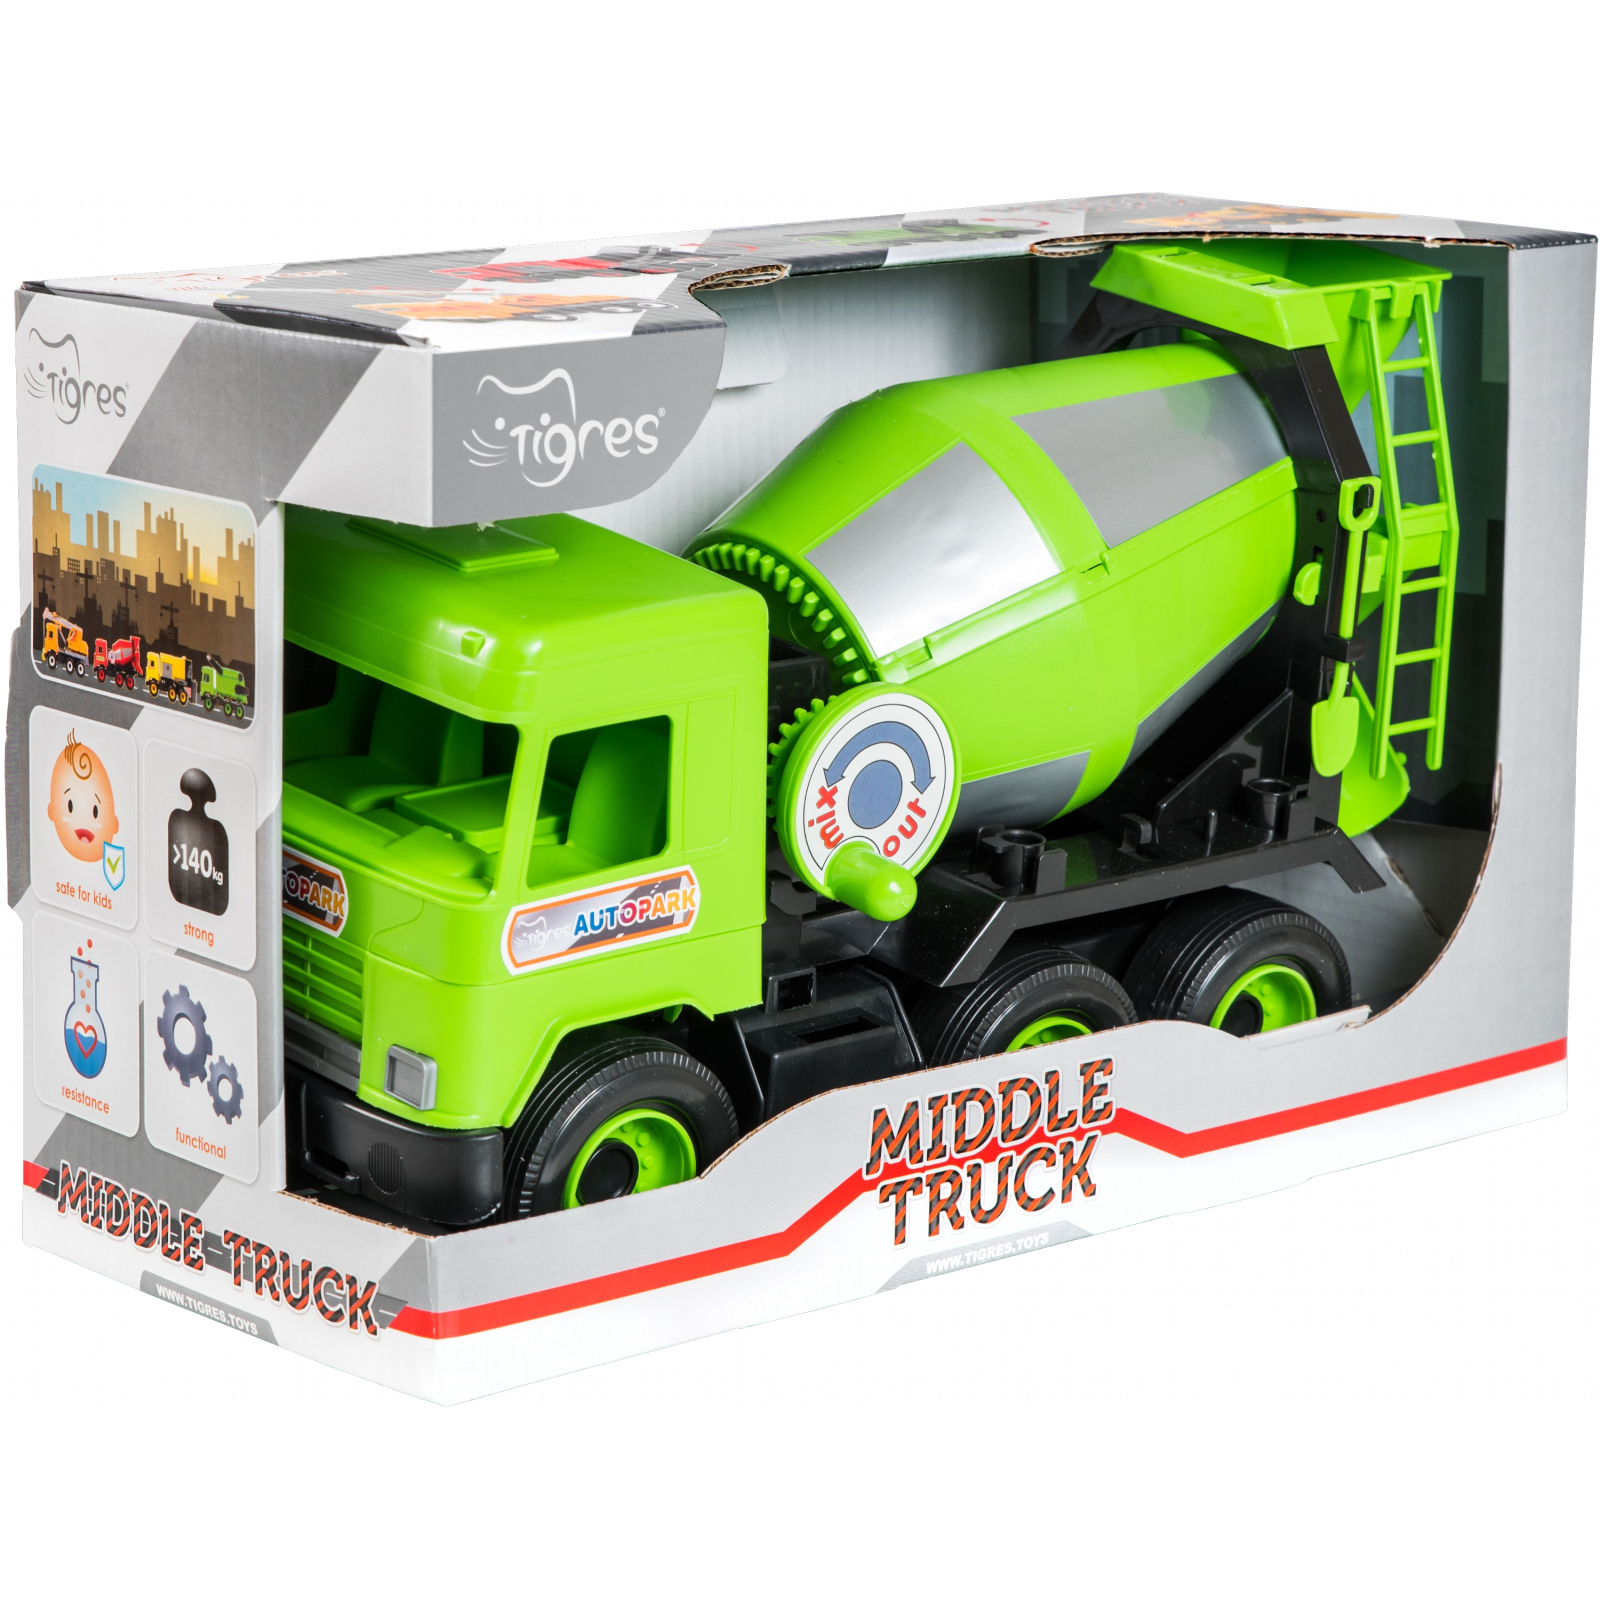 Спецтехника Tigres Авто "Middle truck" бетоносмеситель (св. зеленый) в коробке (39485) изображение 2